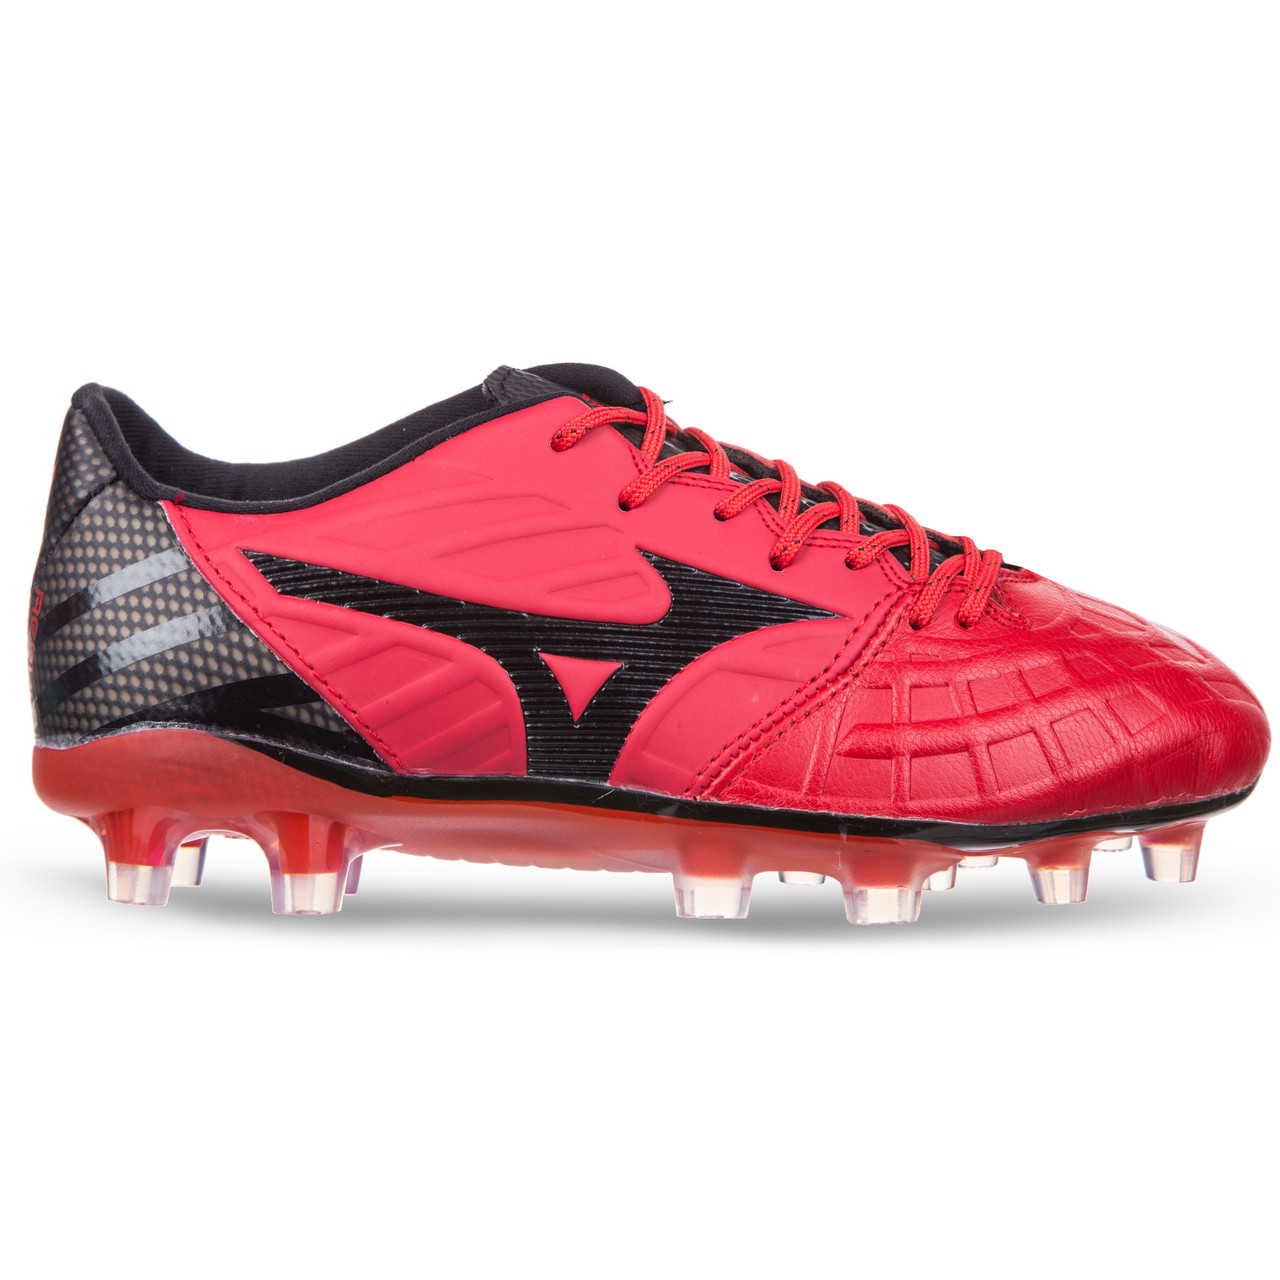 

Бутсы футбольная обувь кожанная MIZUNO 1762 размер 40-45 (верх-кожа, подошва-RB, цвета в ассортименте) Красный-черный 41